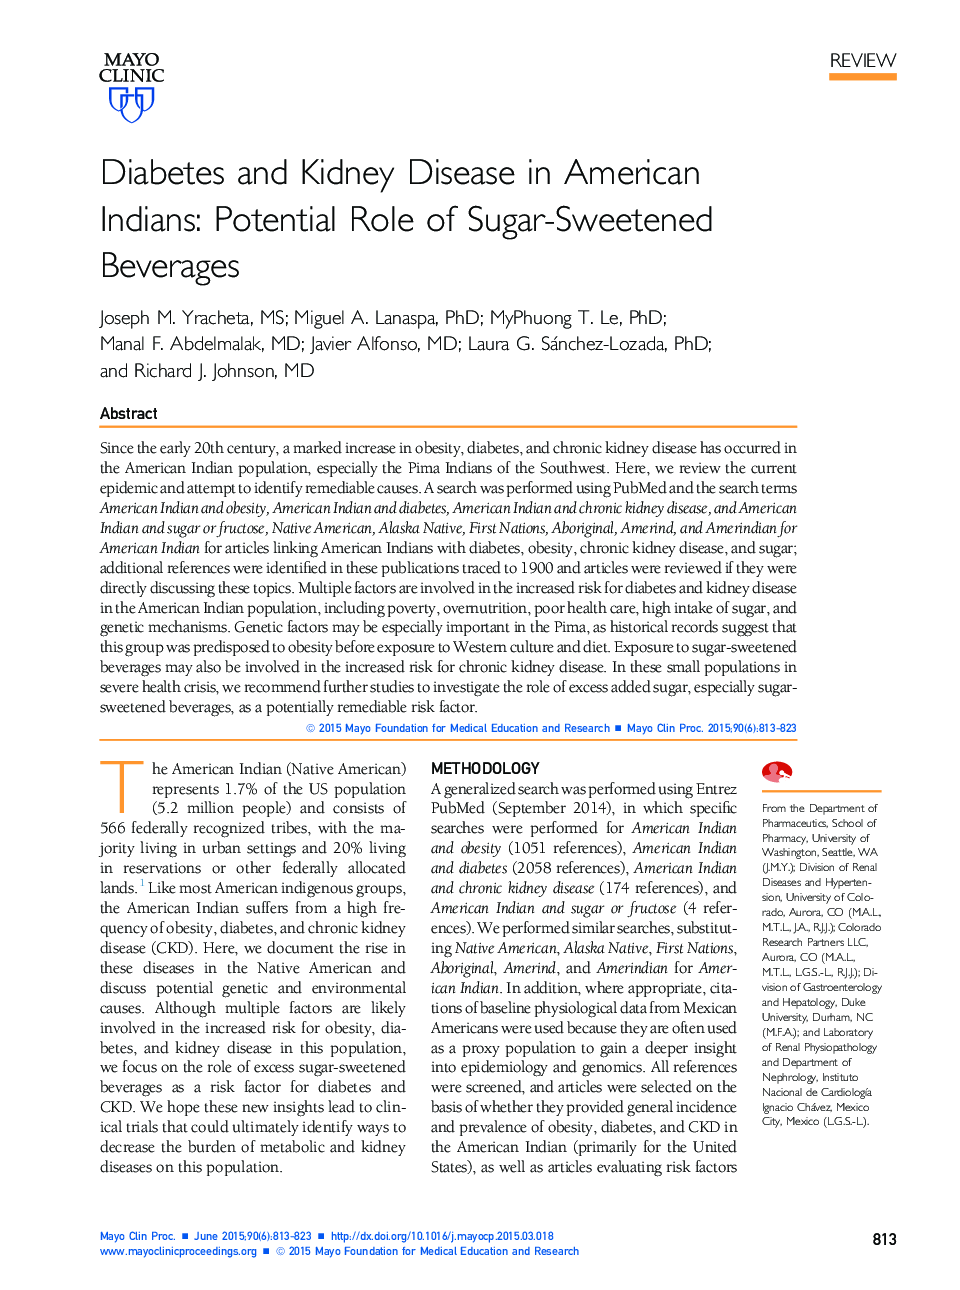 دیابت و بیماری کلیه در سرخپوستان آمریکایی: نقش بالایی از نوشیدنی های شیرین شکر 